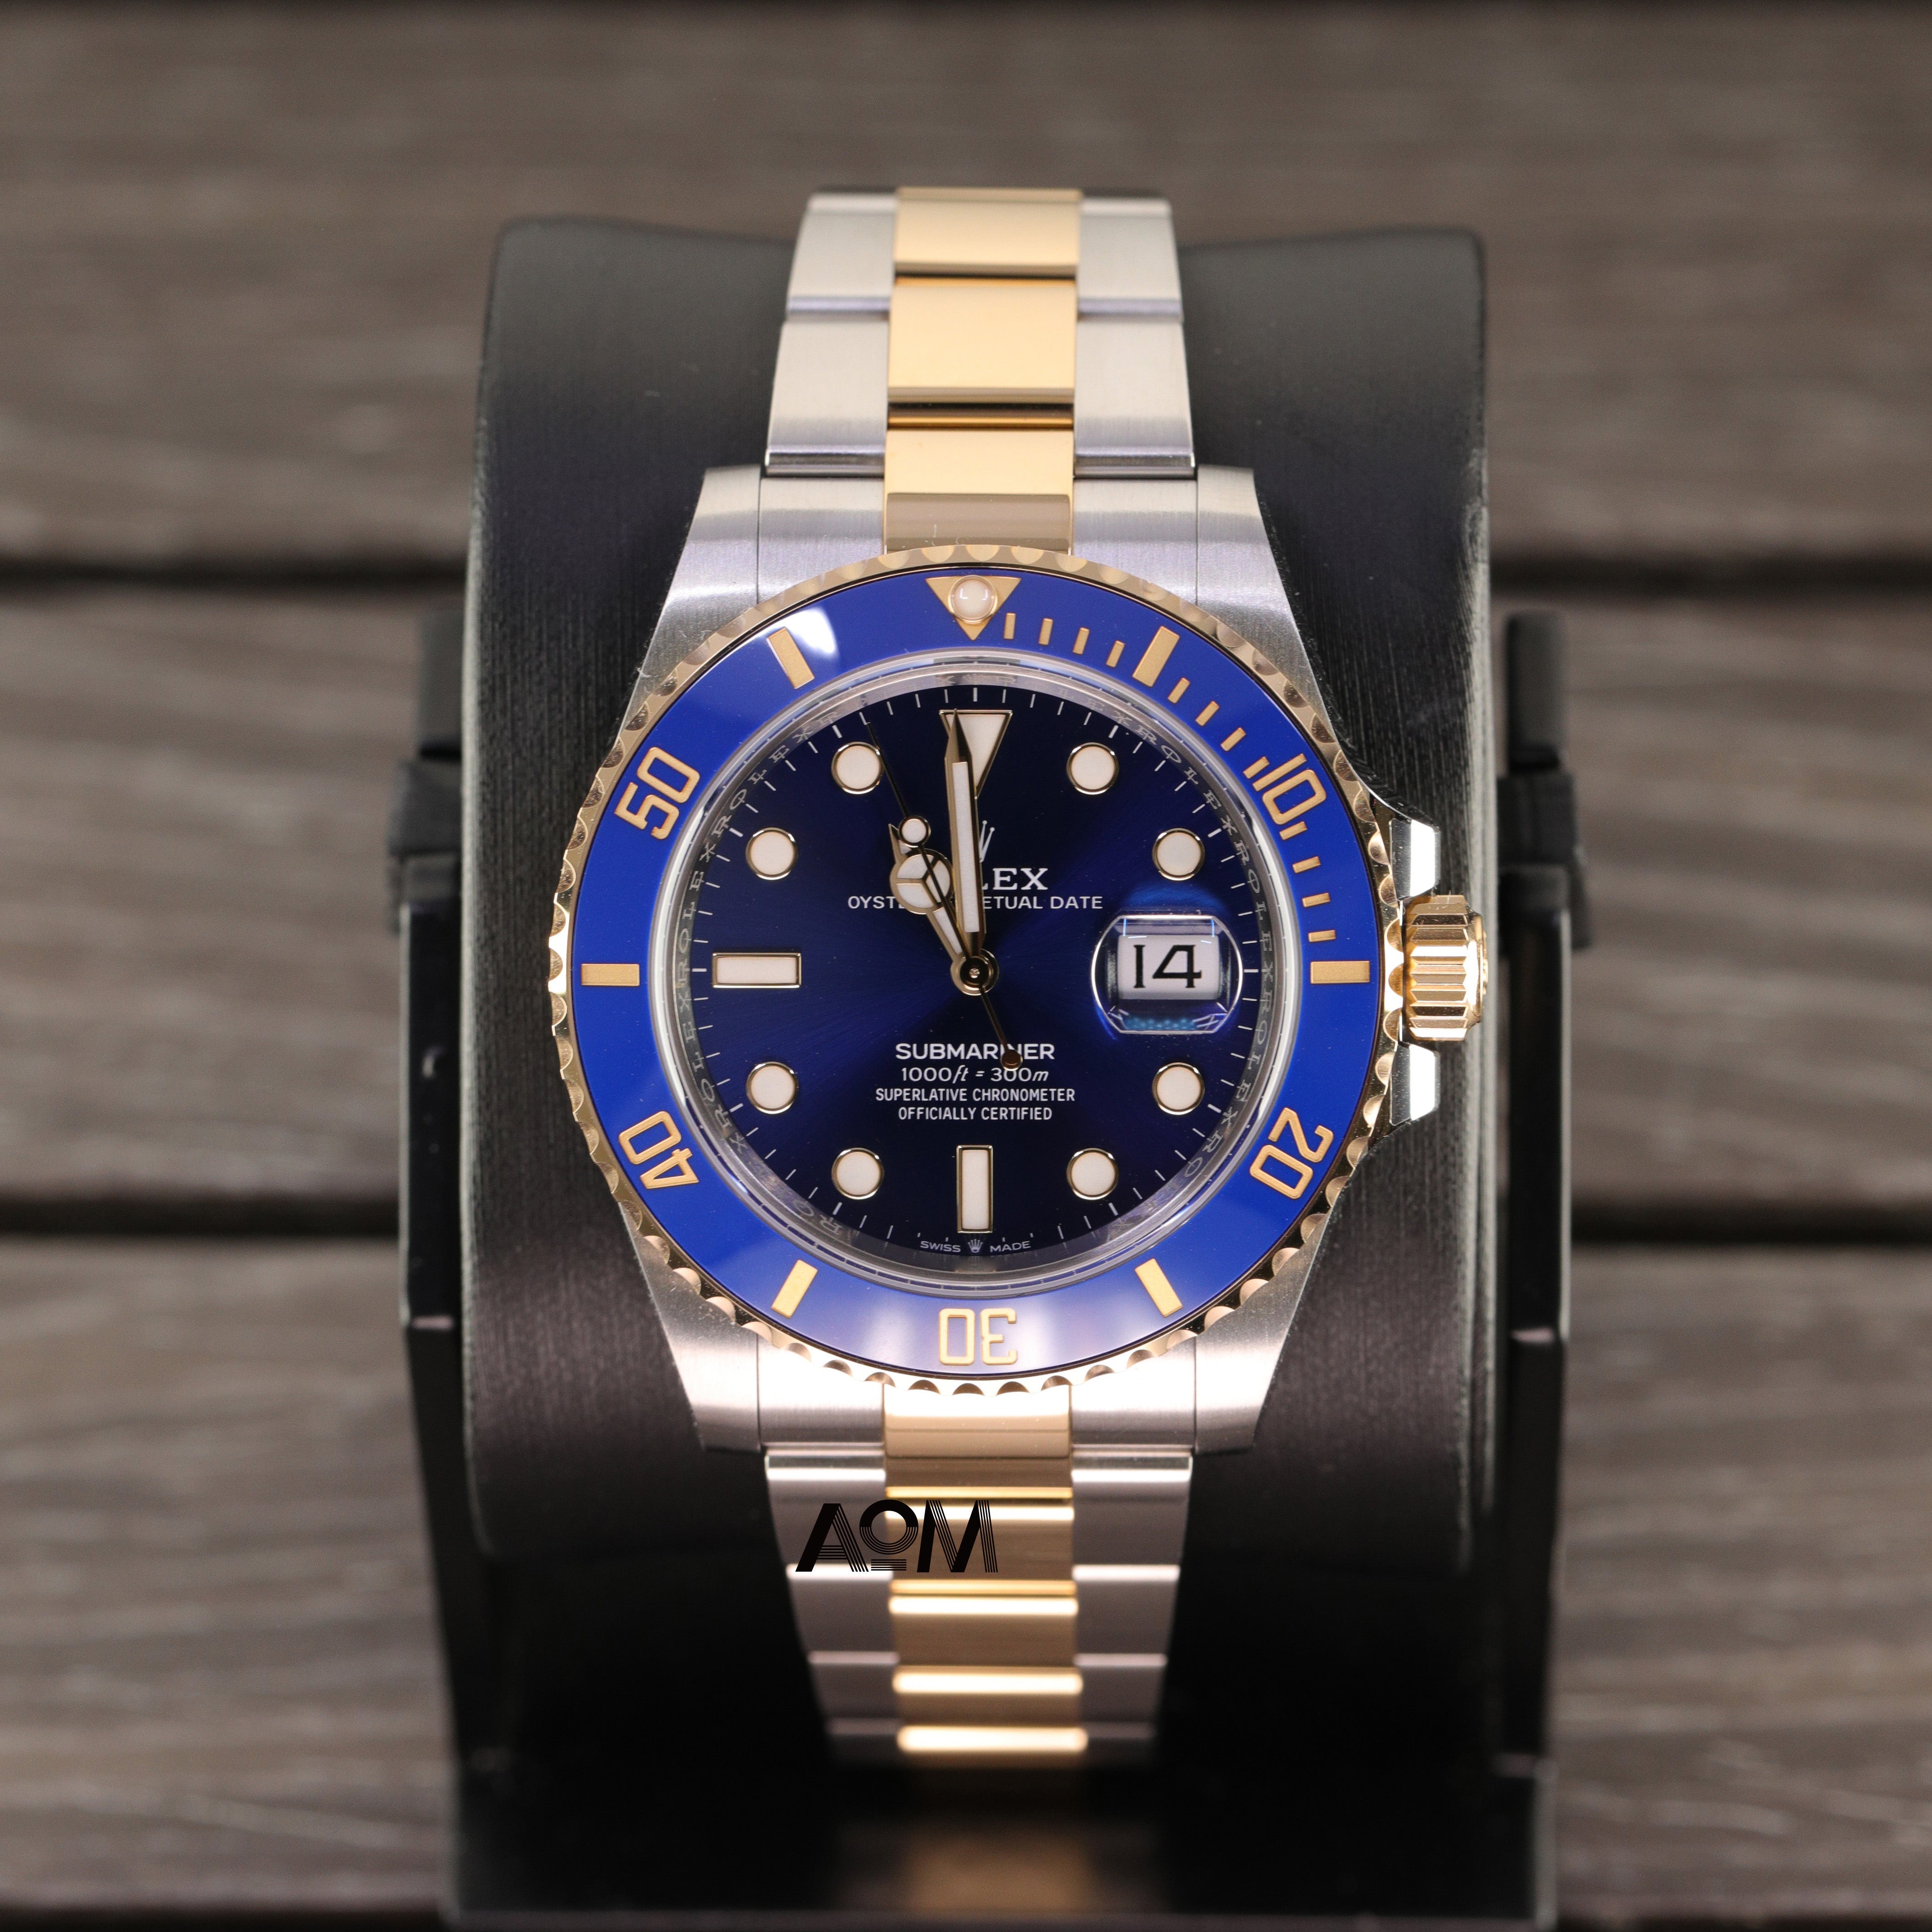 126613LB - AOM Luxury Watch